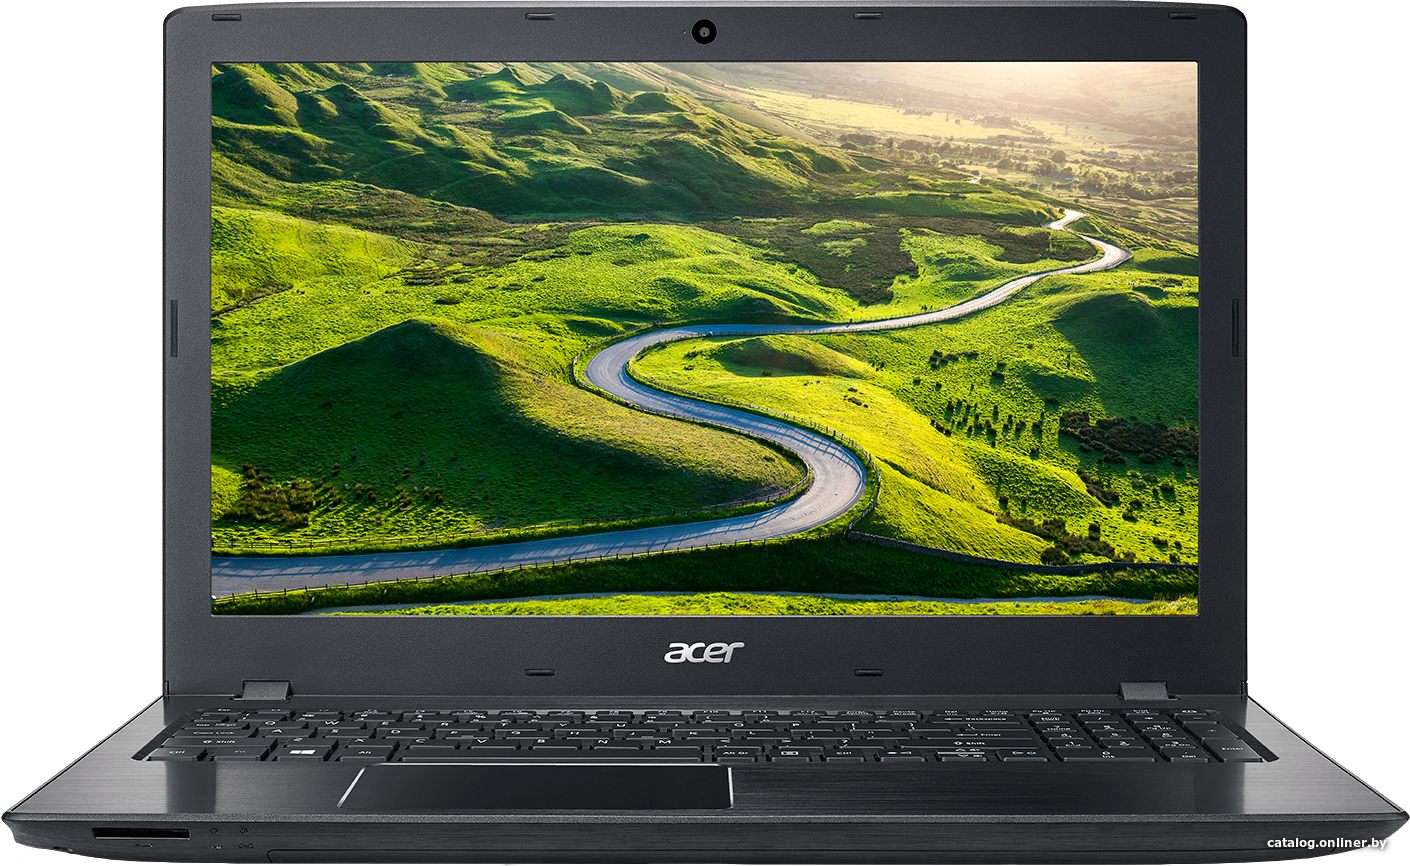 Замена оперативной памяти Acer Aspire E15 E5-576G-367B NX.GTZEU.007